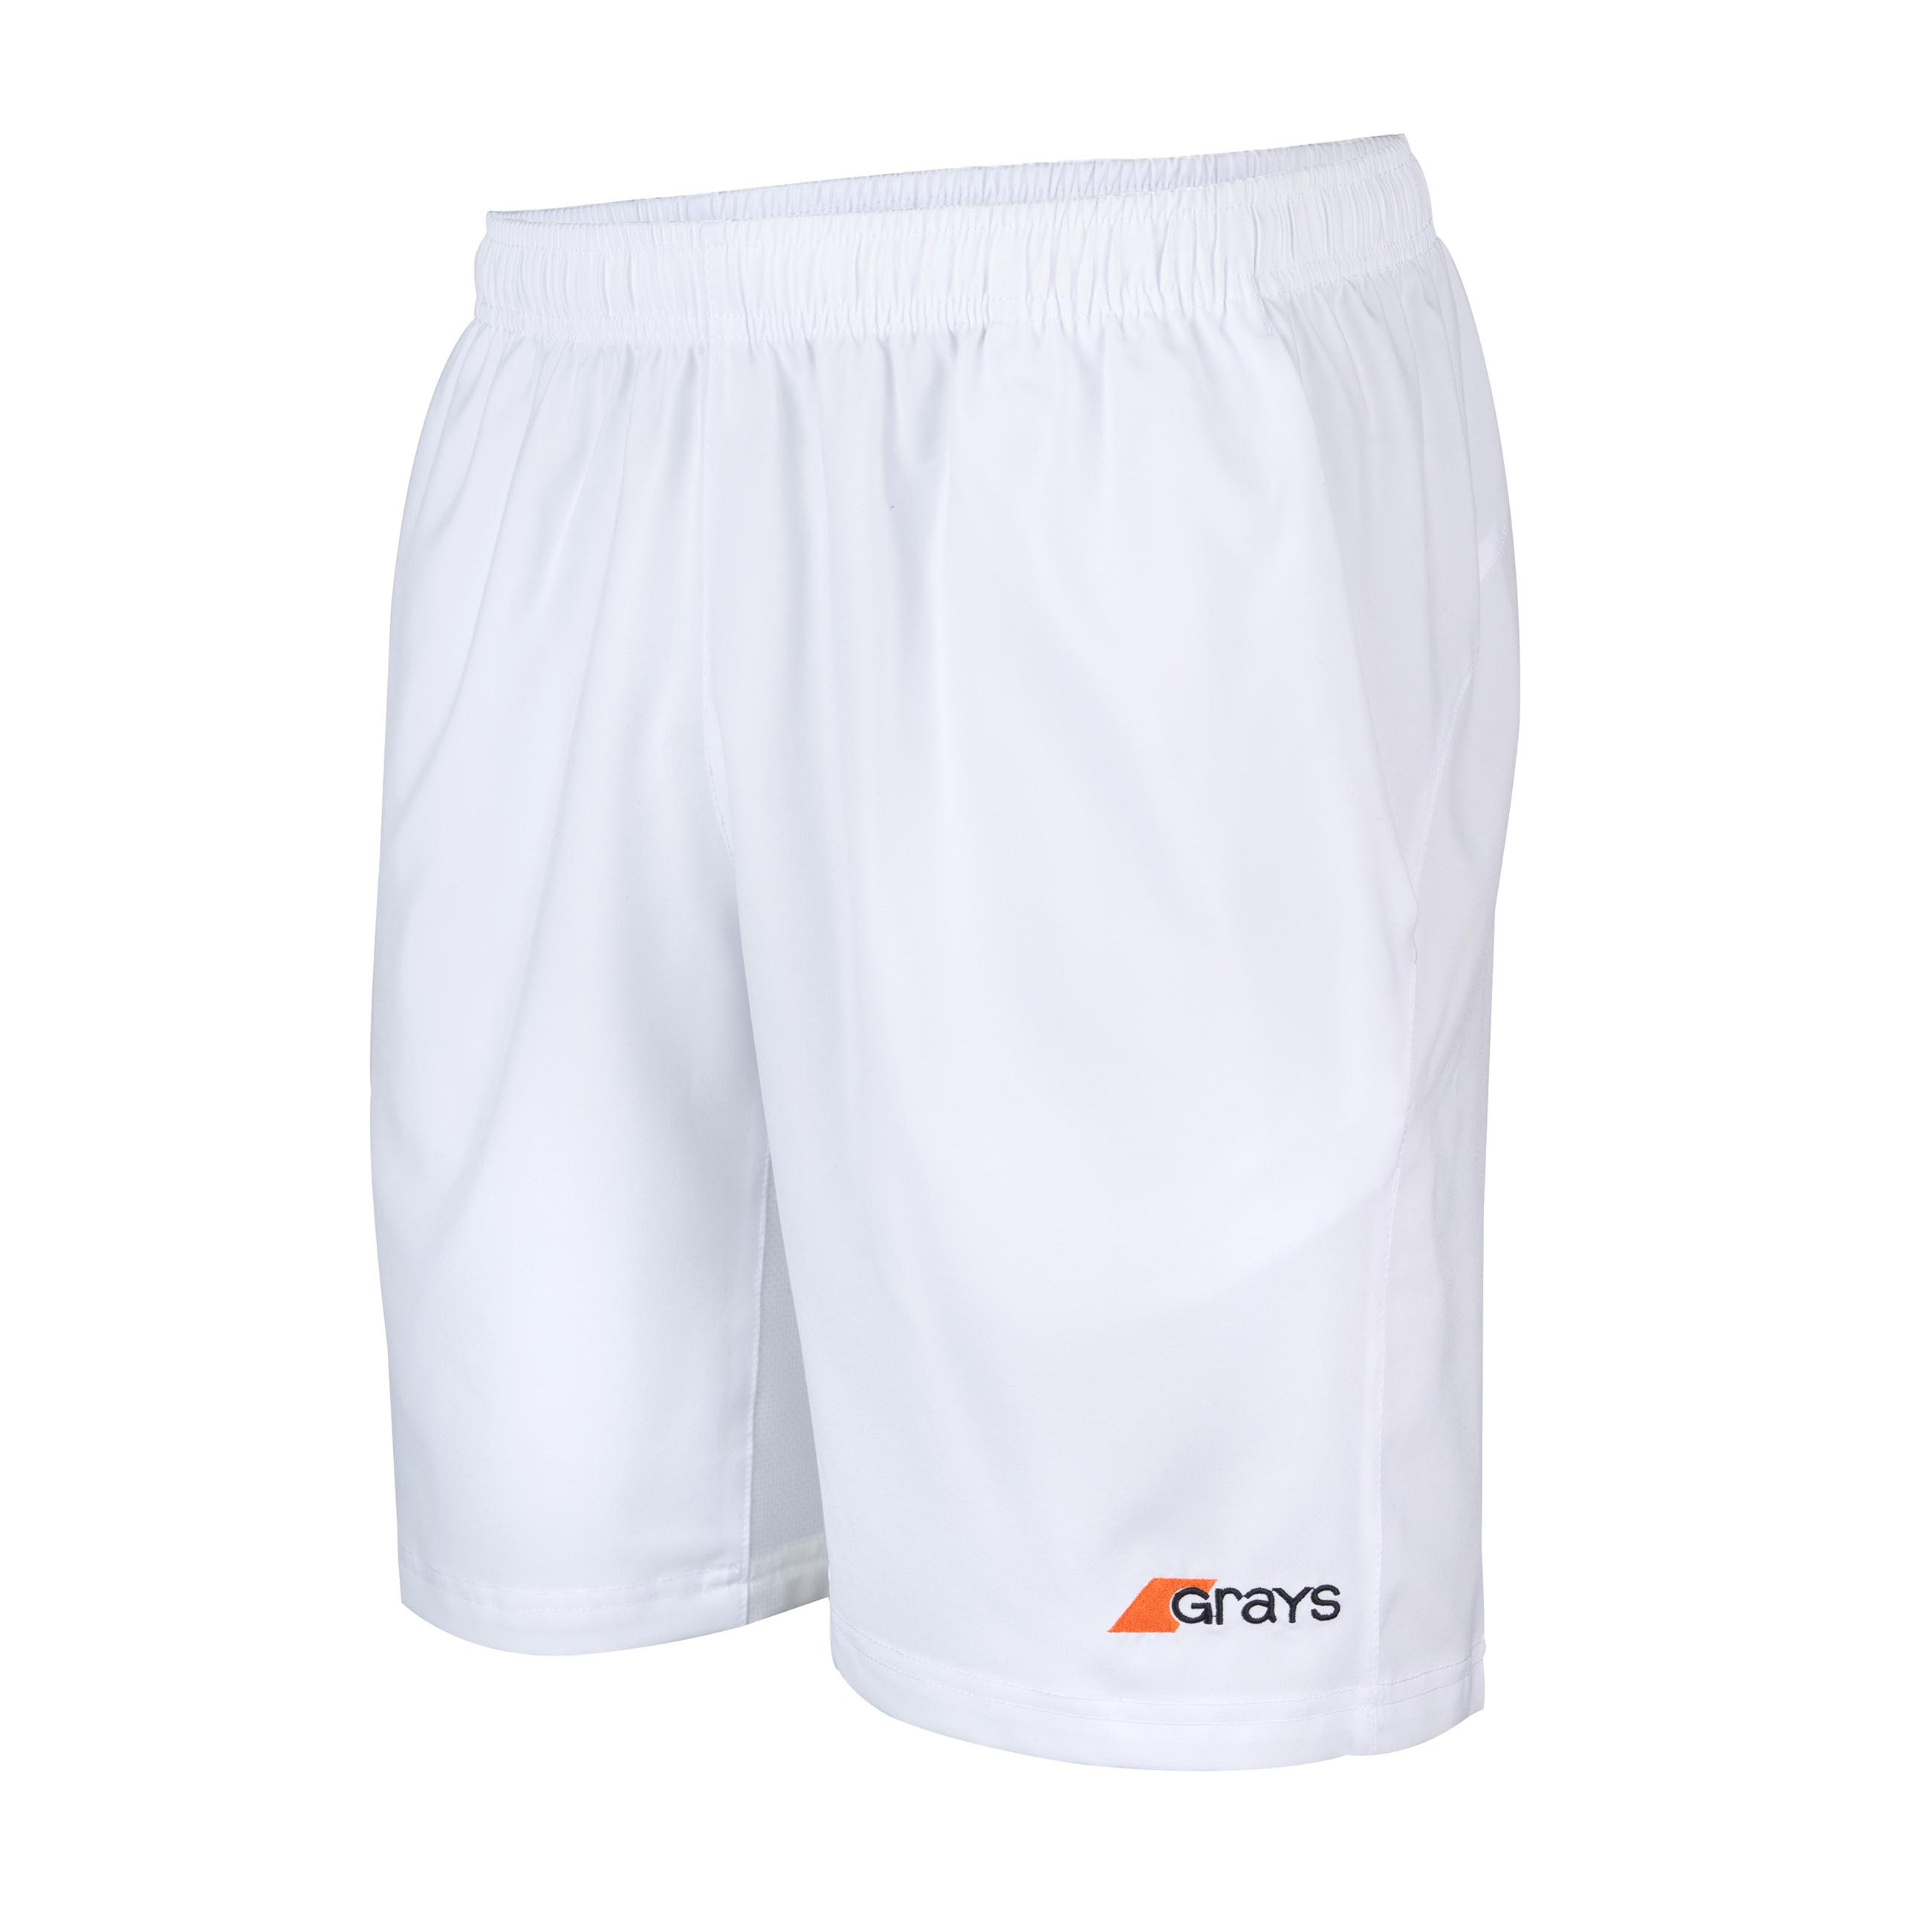 Axis Shorts - Mens